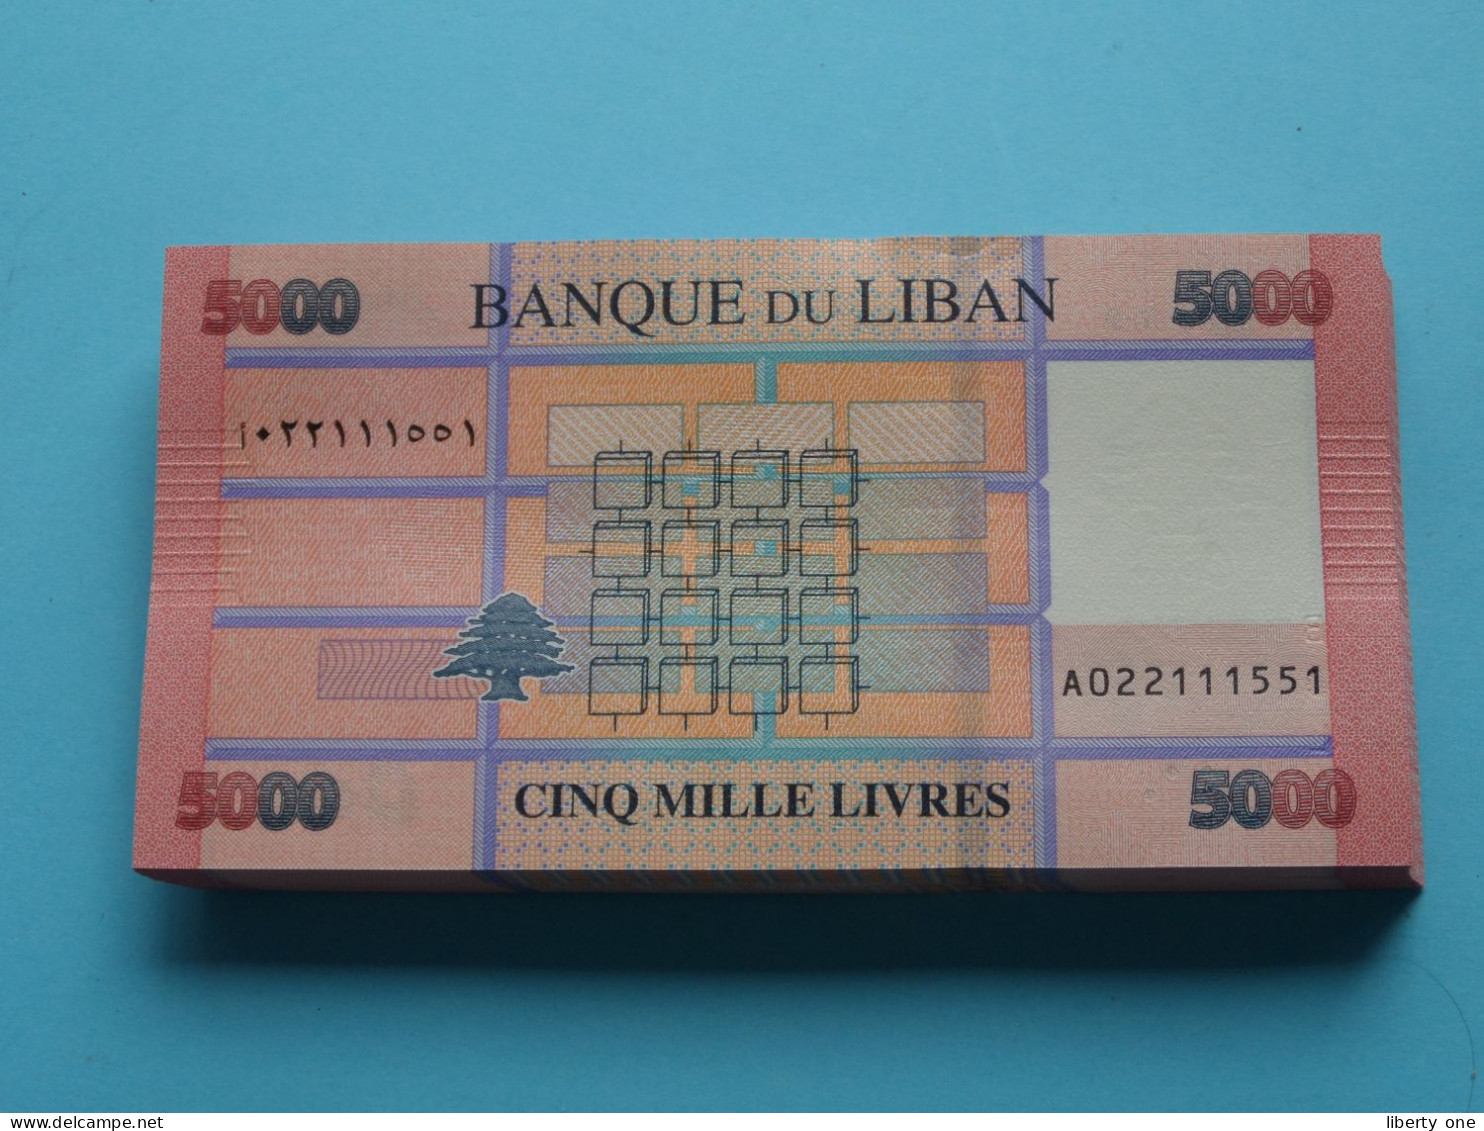 5000 Cinq Mille Livres ( Banque Du Liban ) Lebanon 2021 ( For Grade, Please See SCANS ) UNC ! - Libanon